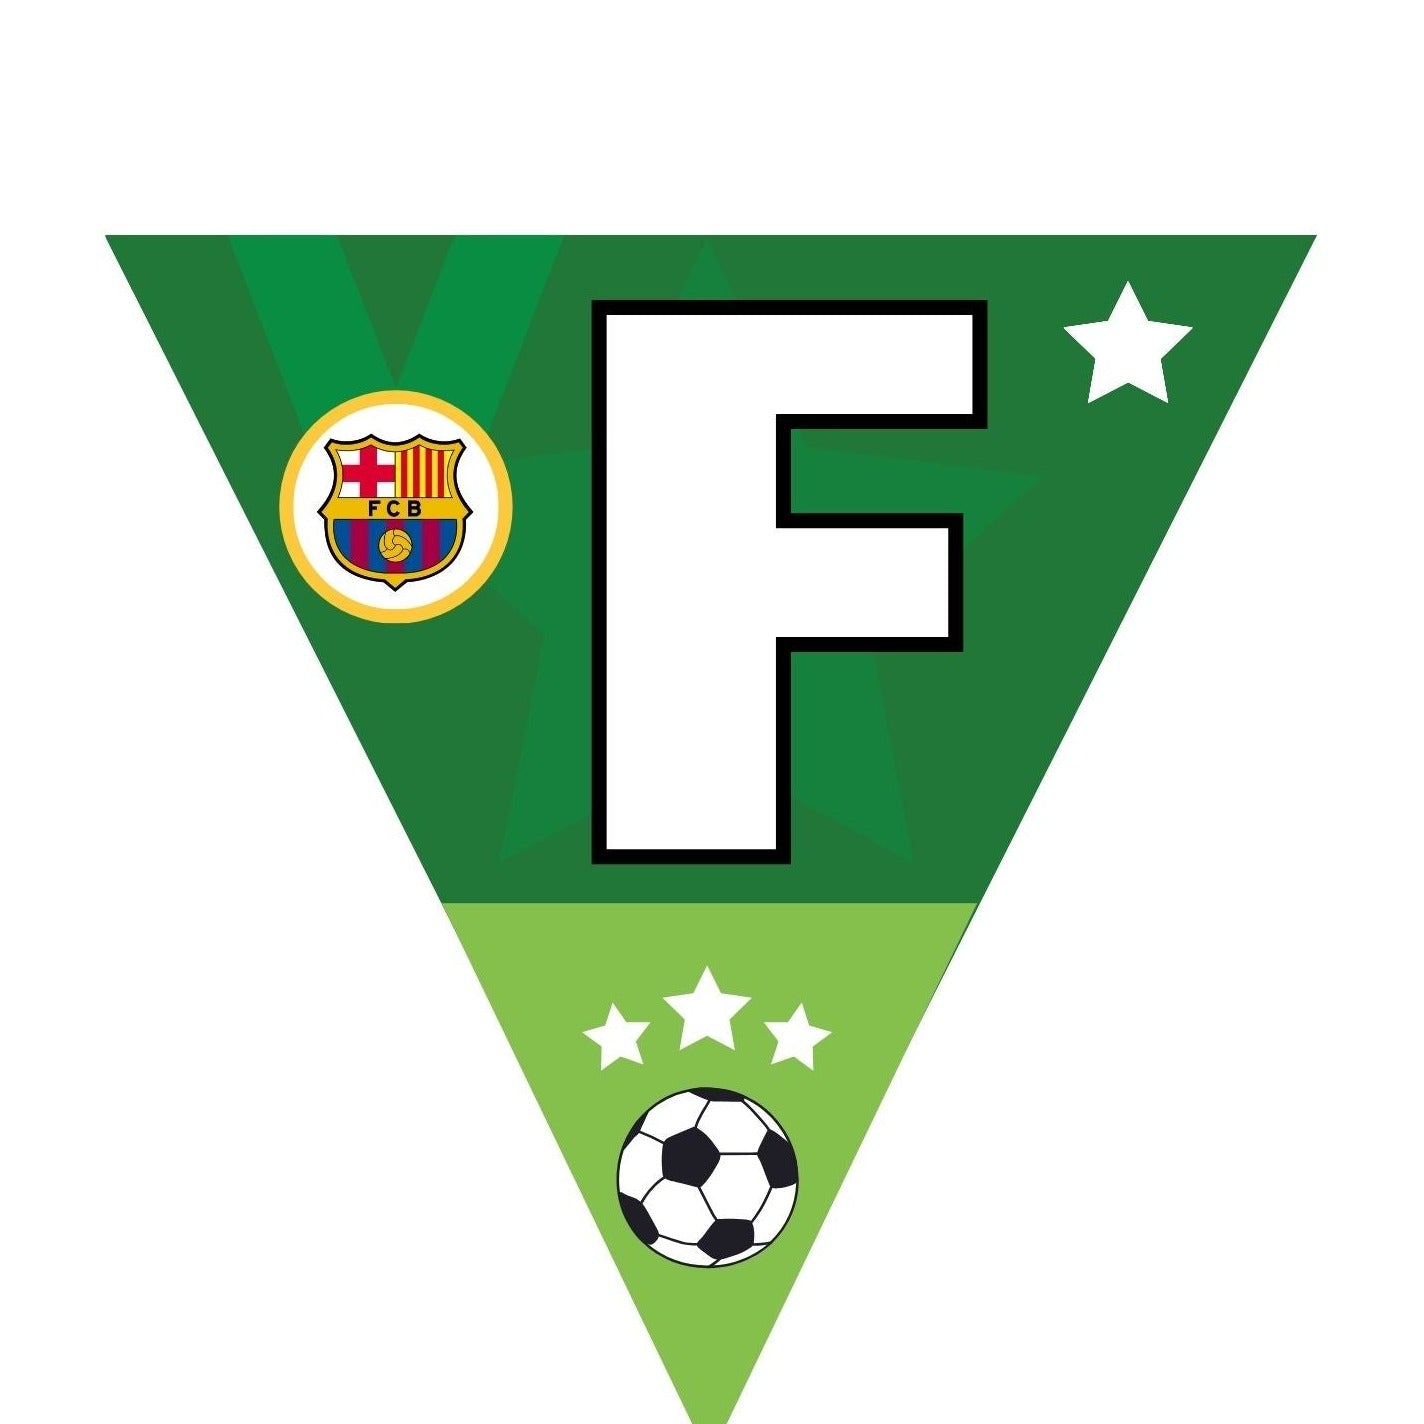 Banderines personalizados con escudos de fútbol